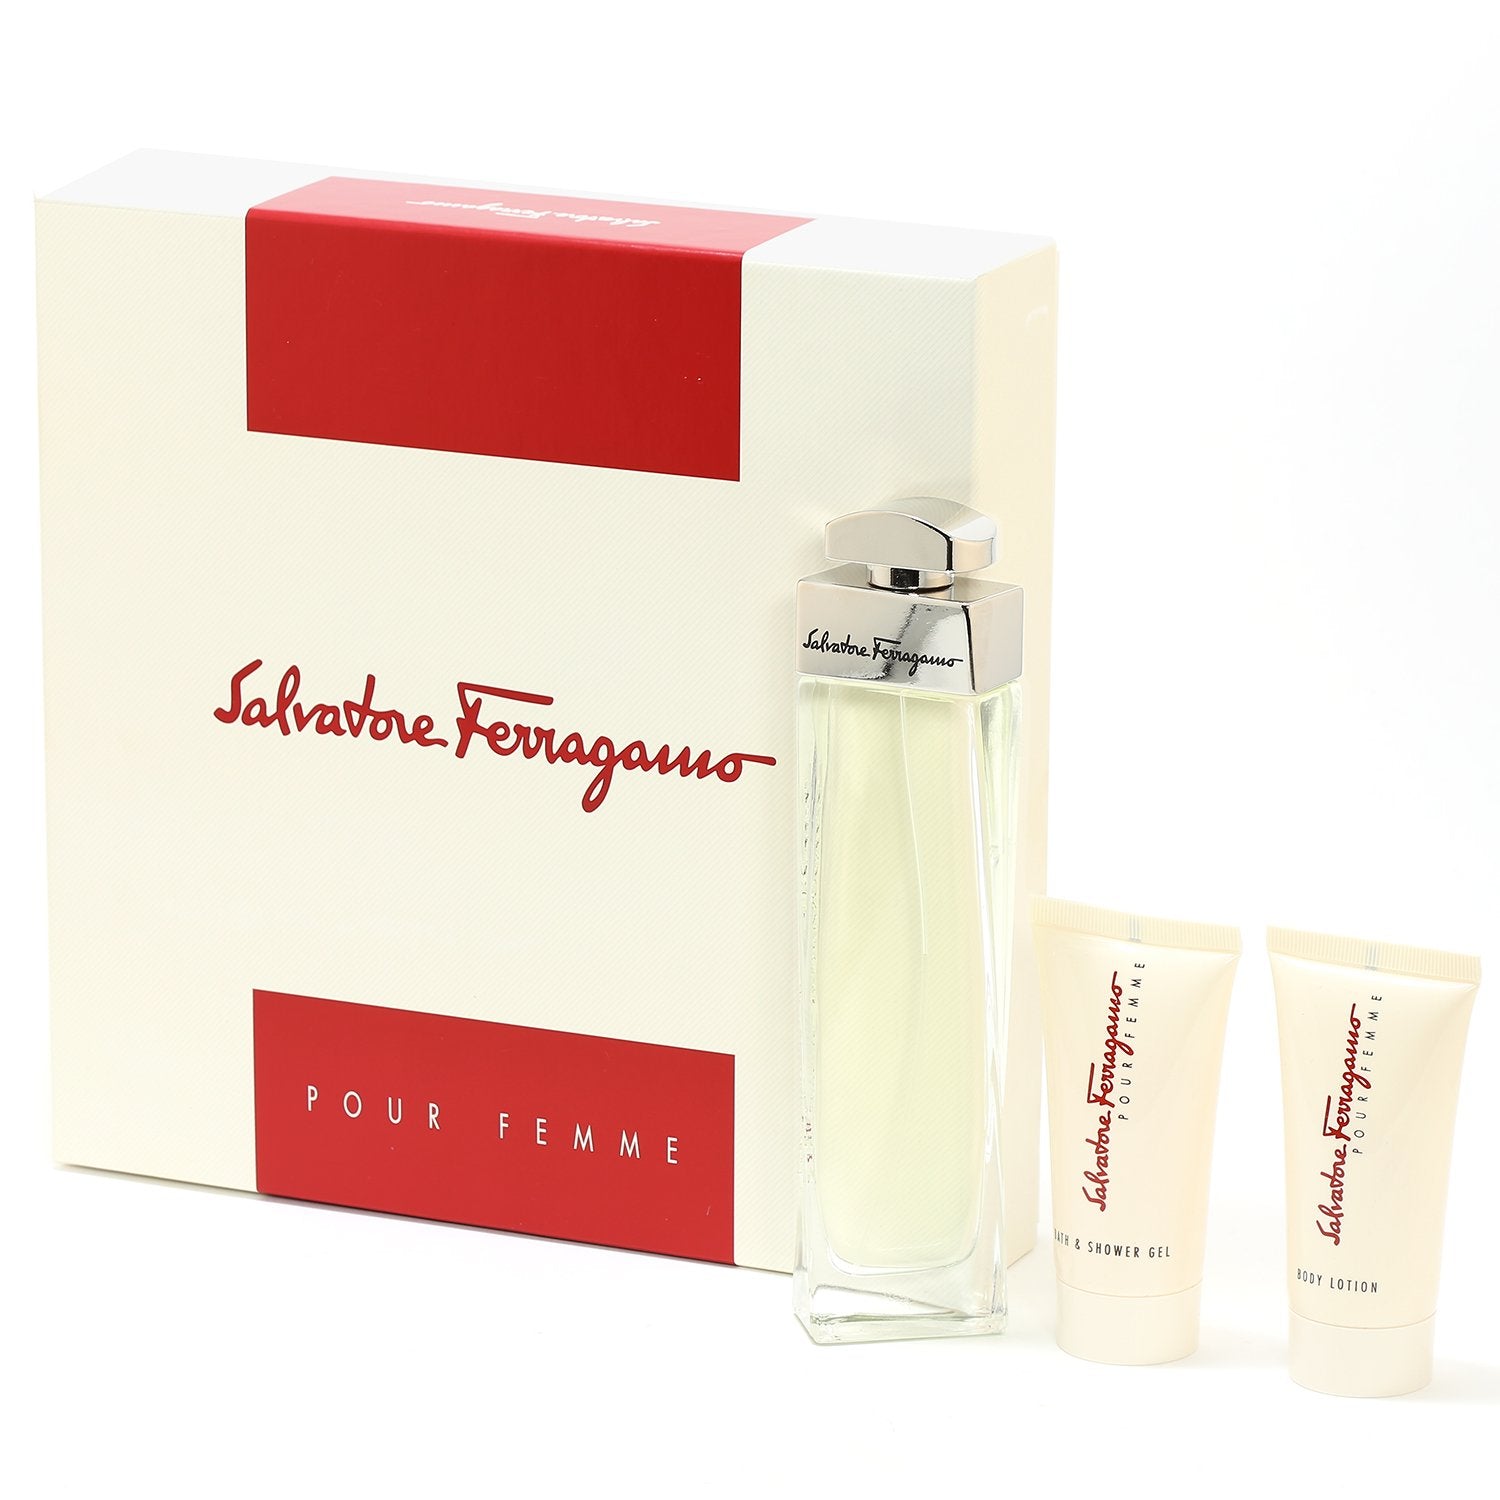 Perfume Sets - FERRAGAMO FEMME FOR WOMEN - GIFT SET